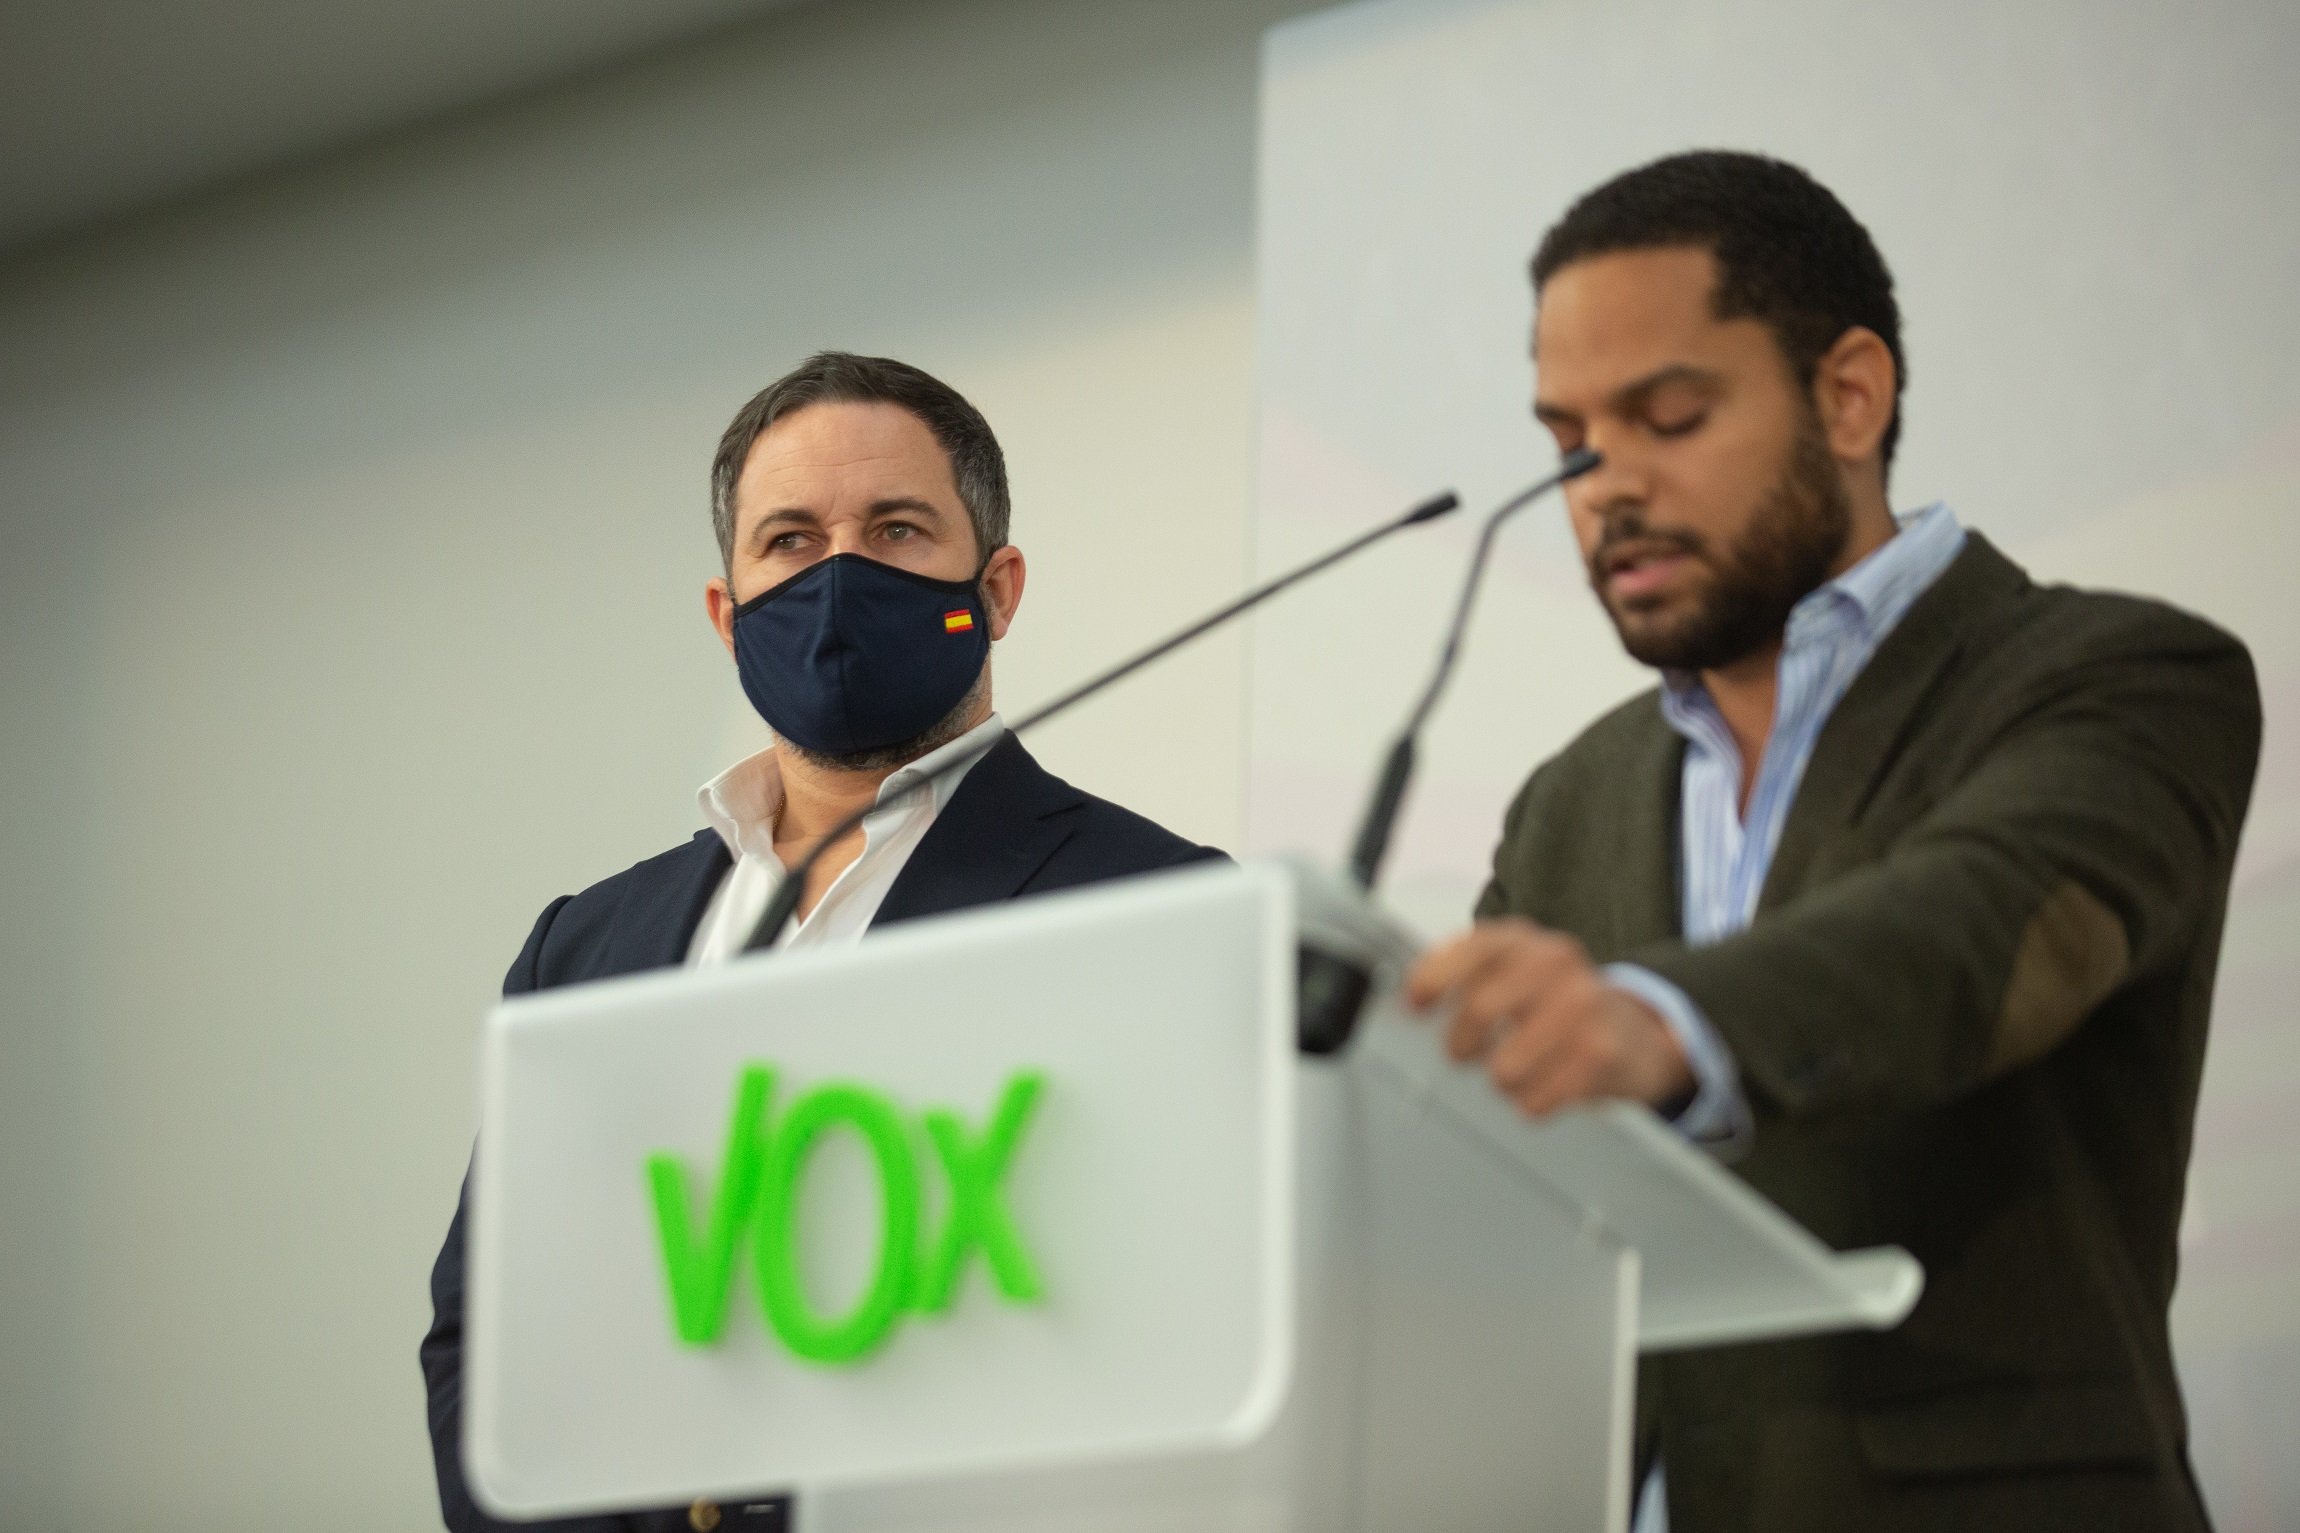 Dos candidats de Vox, imputats per delictes d'odi i discriminació